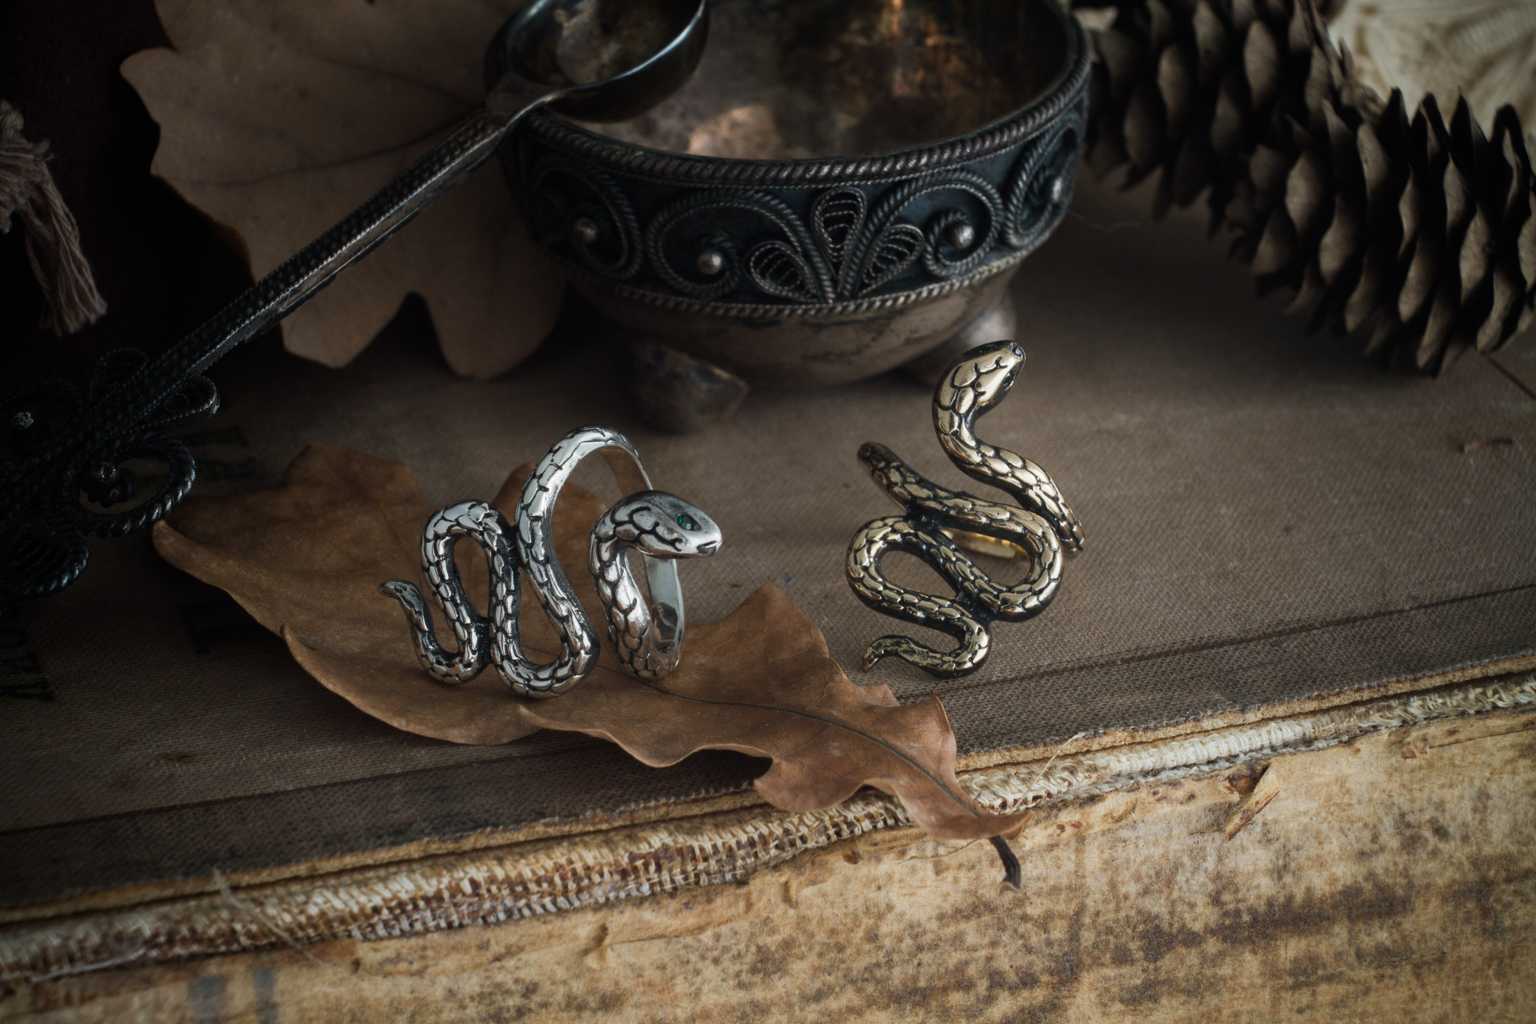 Кольцо в виде змеи: значение золотого или серебряного кольца со змеем